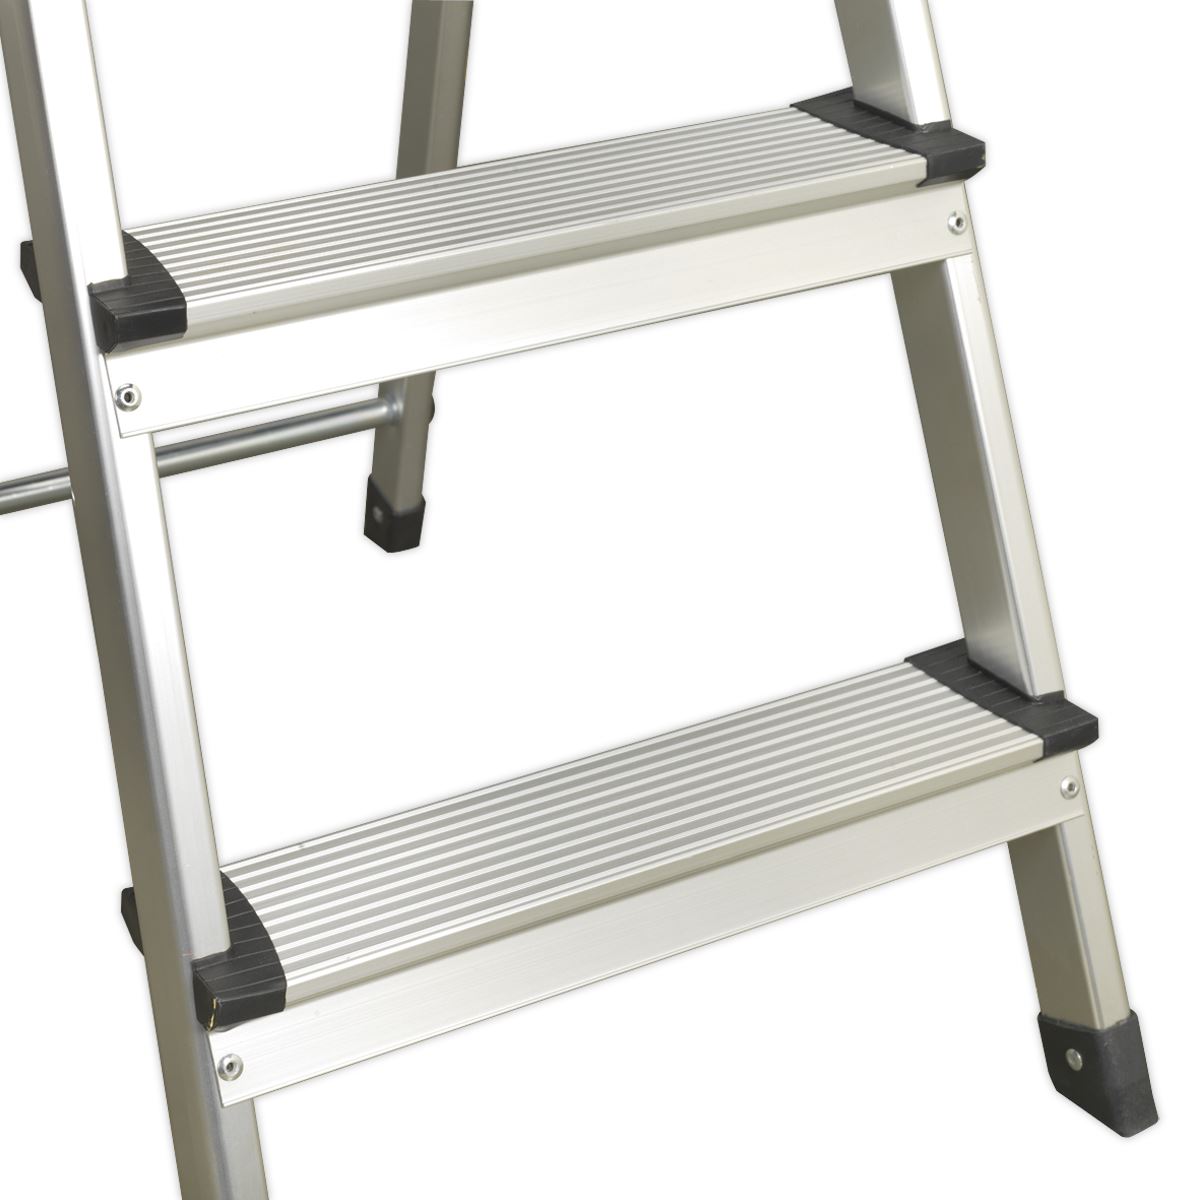 Sealey Aluminium Step Ladder 3-Tread EN 131